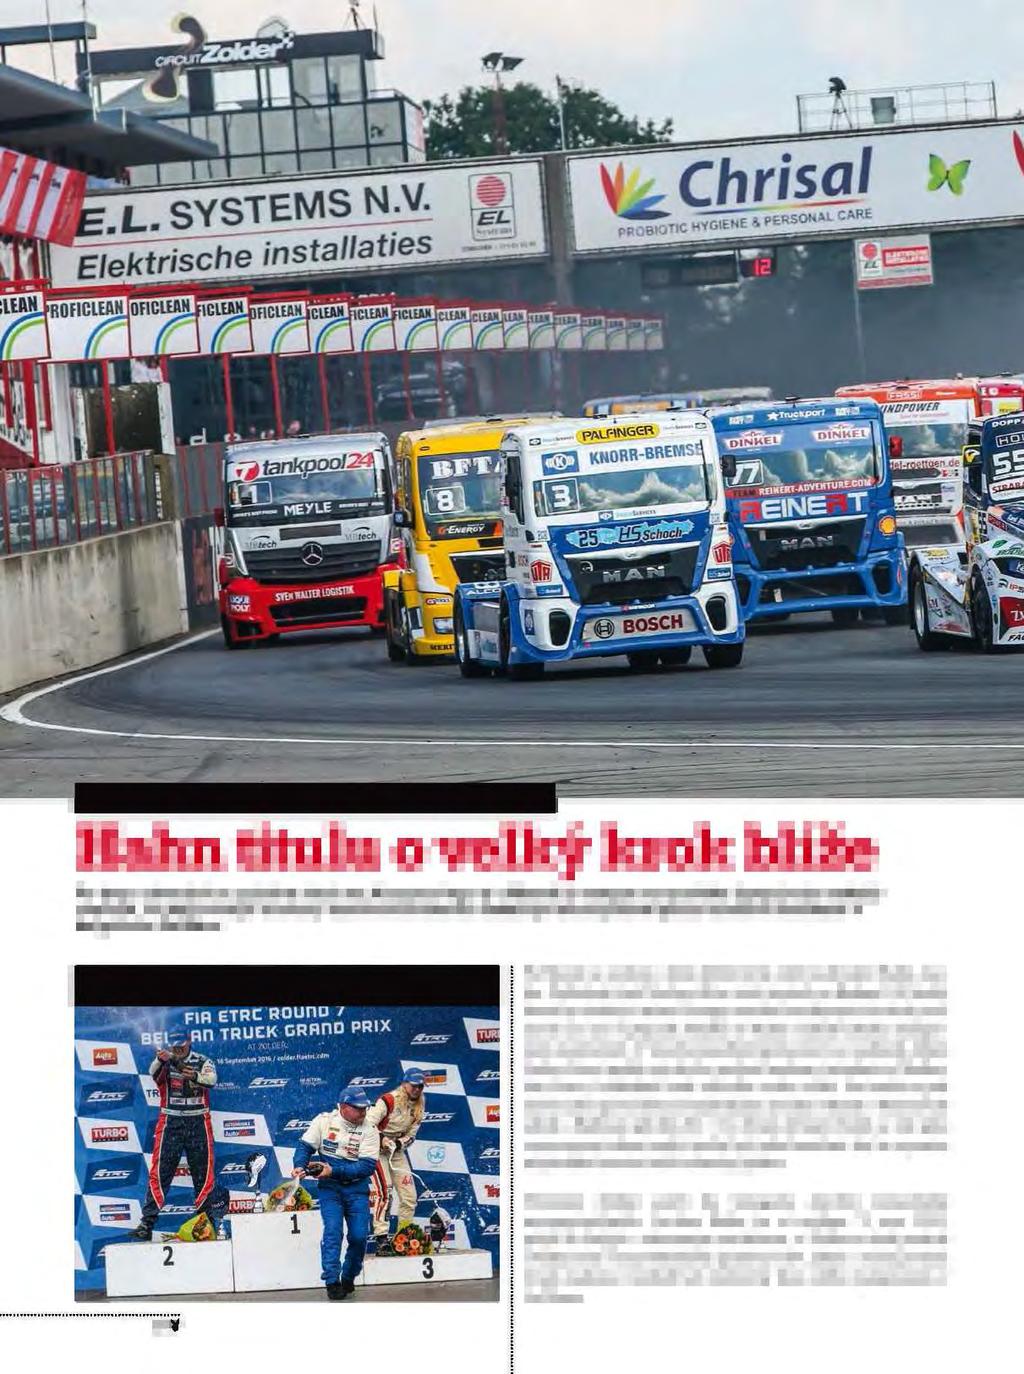 ME TAHAČŮ 2016 ZOLDER (BELGIE) Hahn titulu o velký krok blíže Po dvou závodech v rychlém sledu na Hungaroringu a v Mostě se tempo evropského šampionátu tahačů zvolnilo, na nejrychlejší truckery